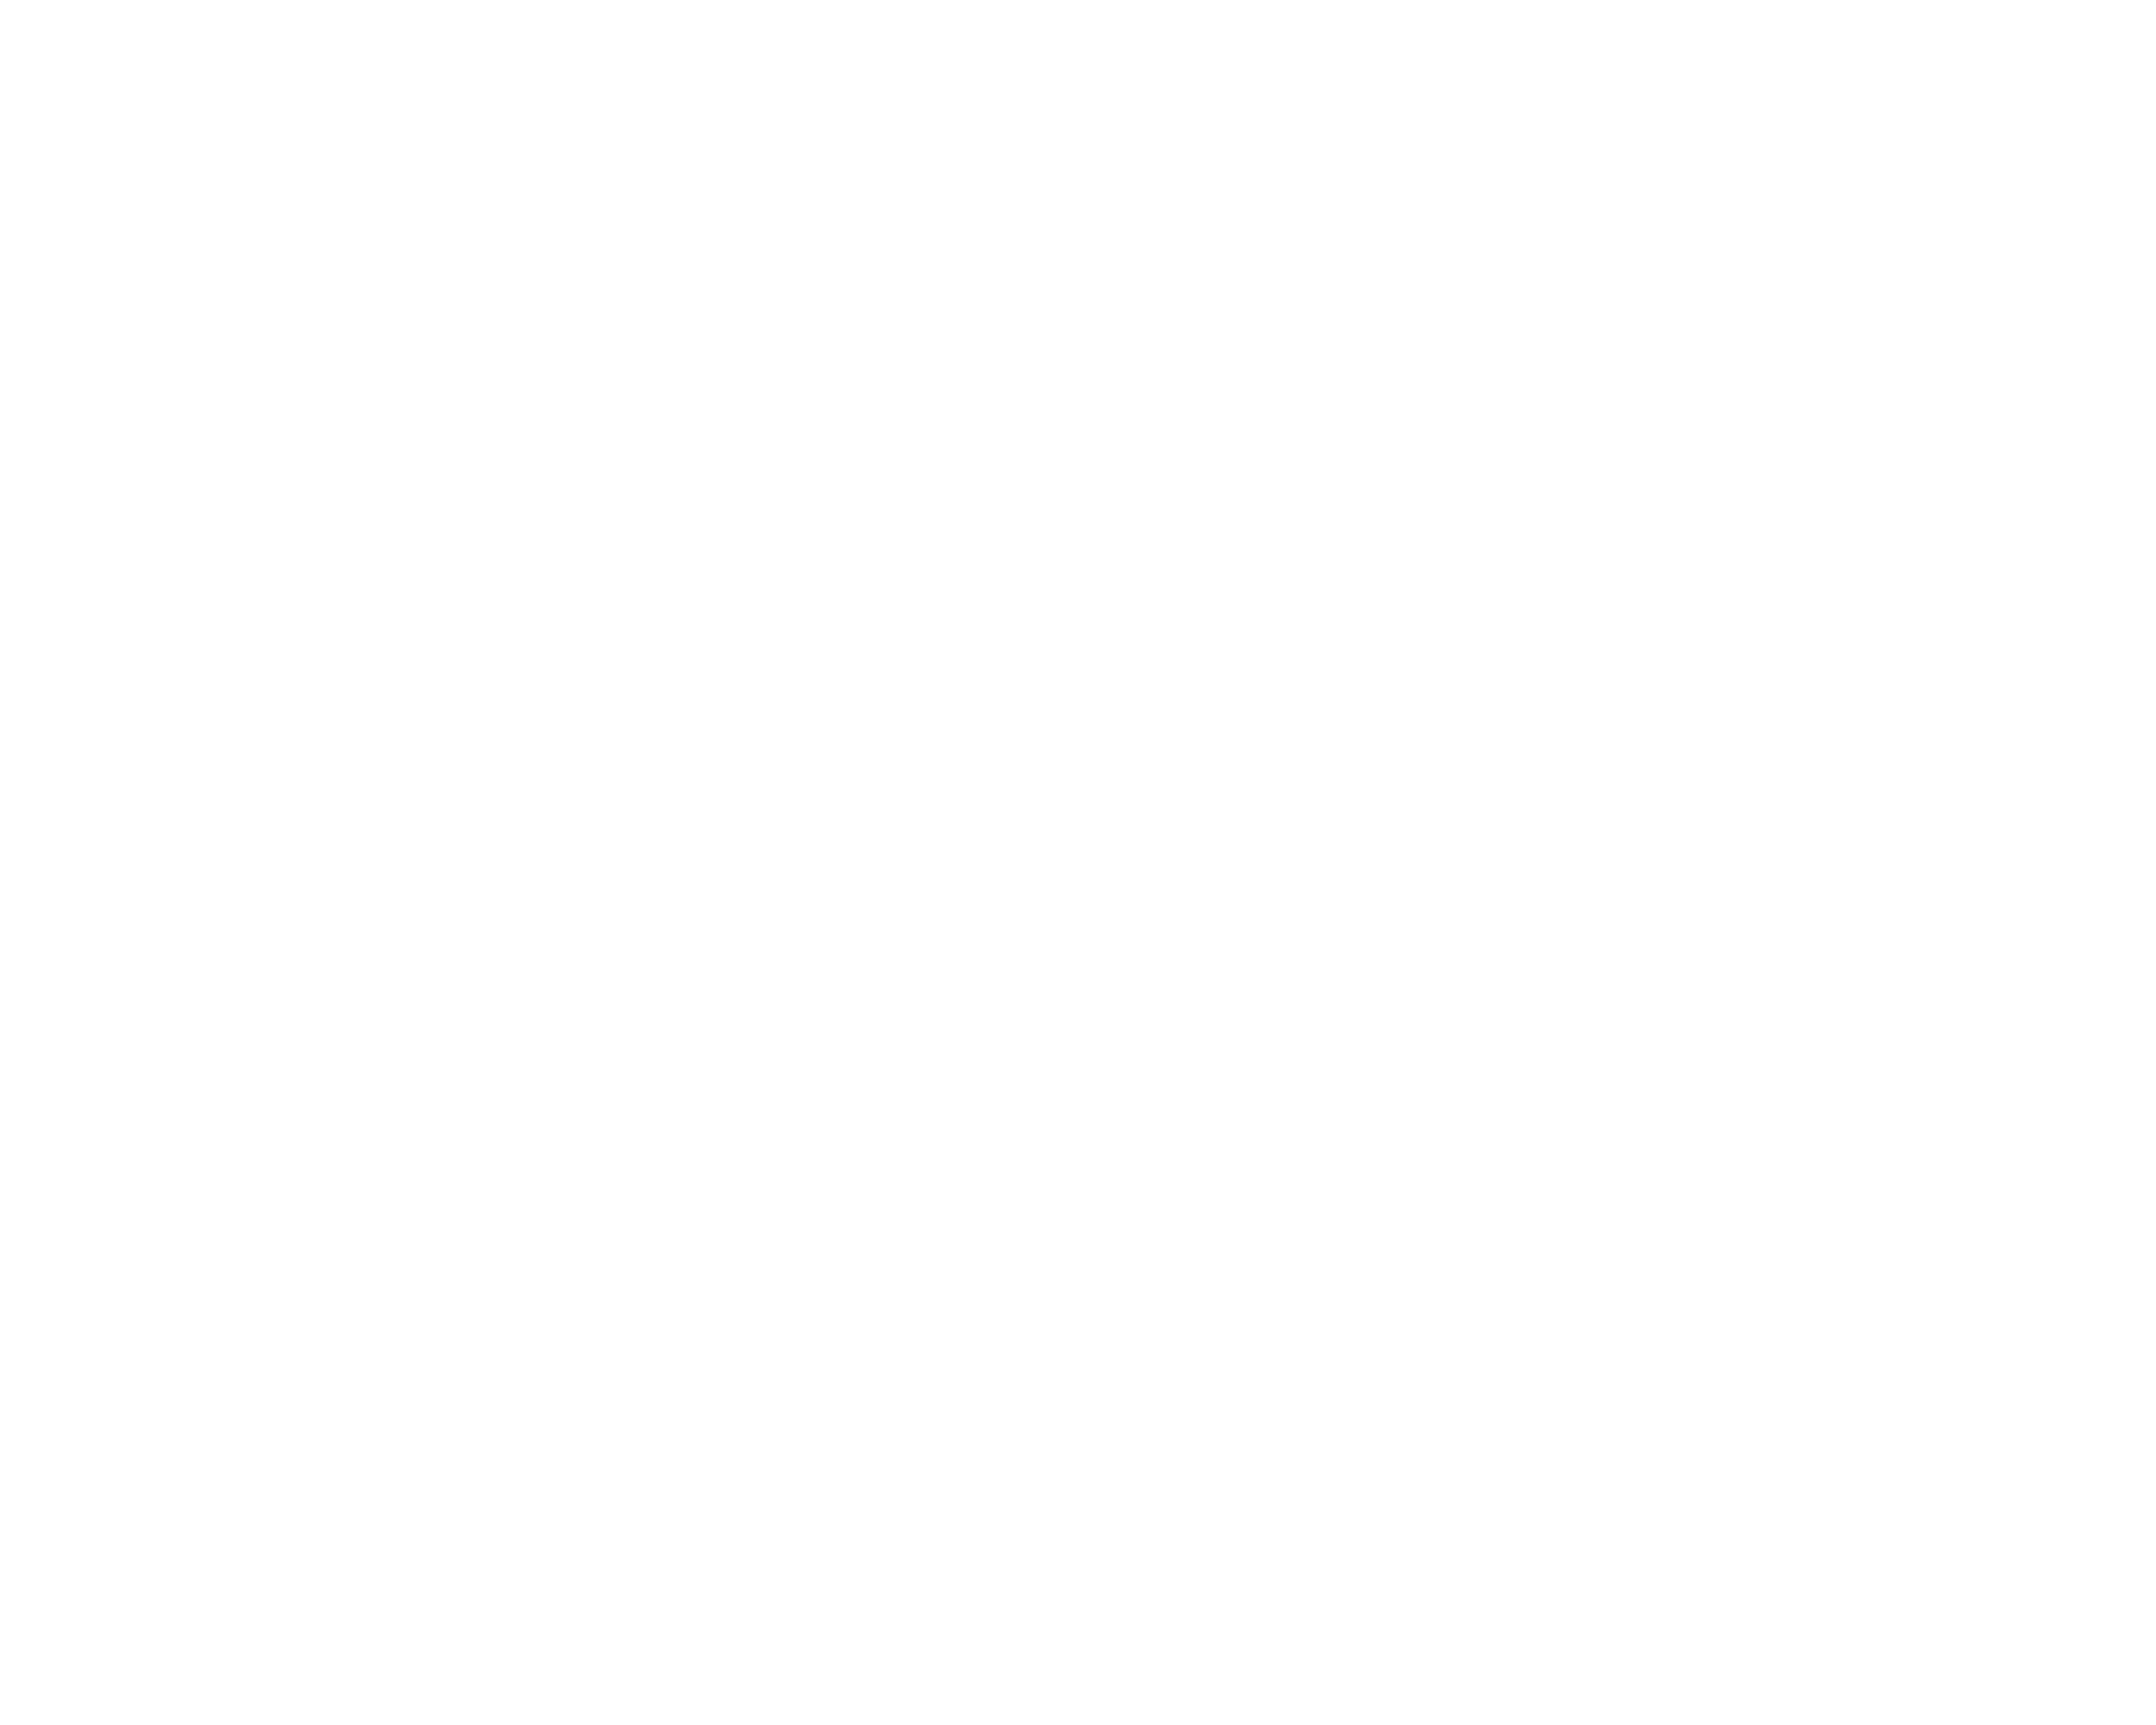 Qubit Conference